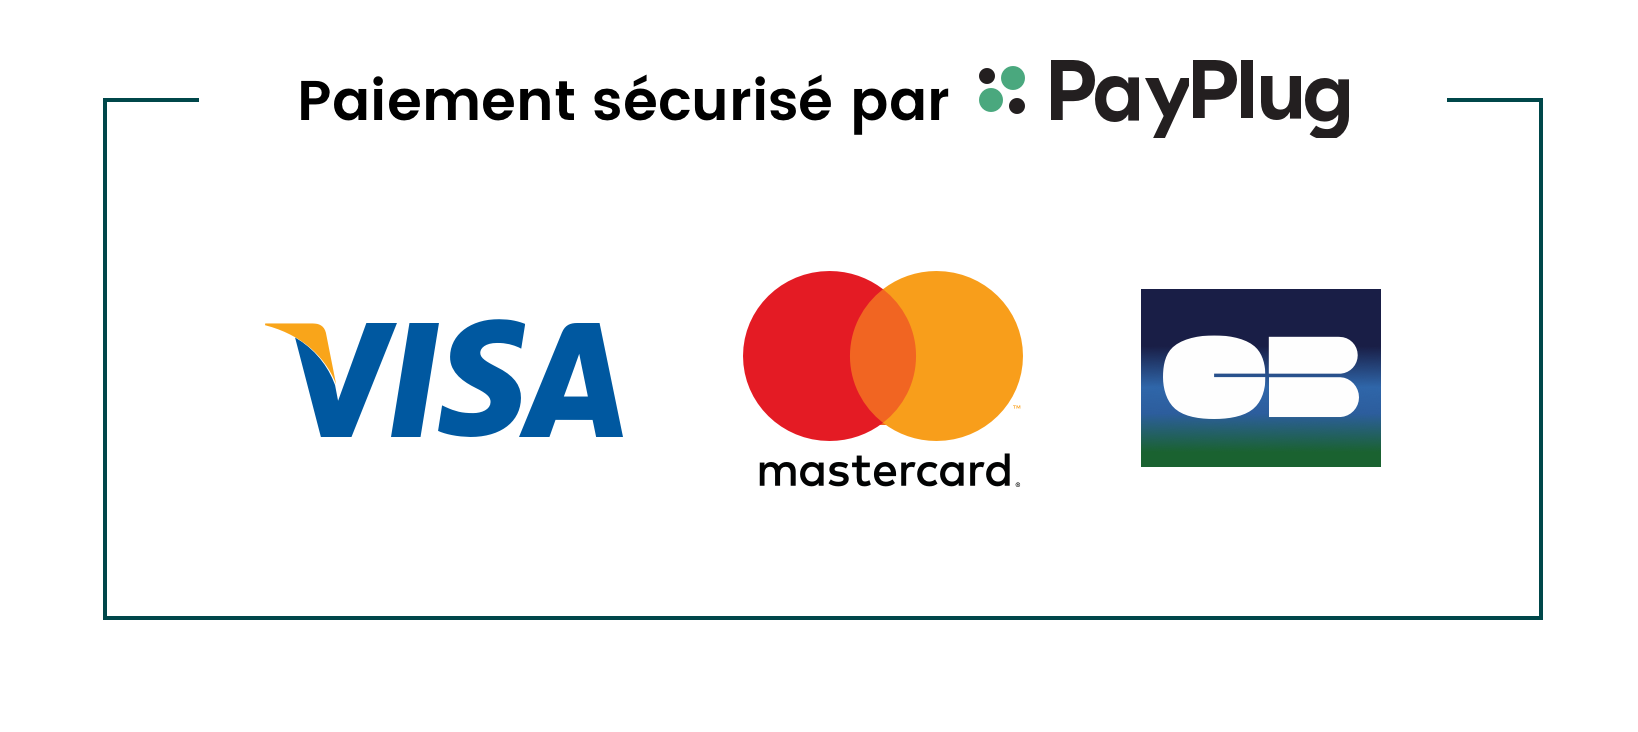  Paiement sécurisé par PayPlug - Visa • Mastercard • CB